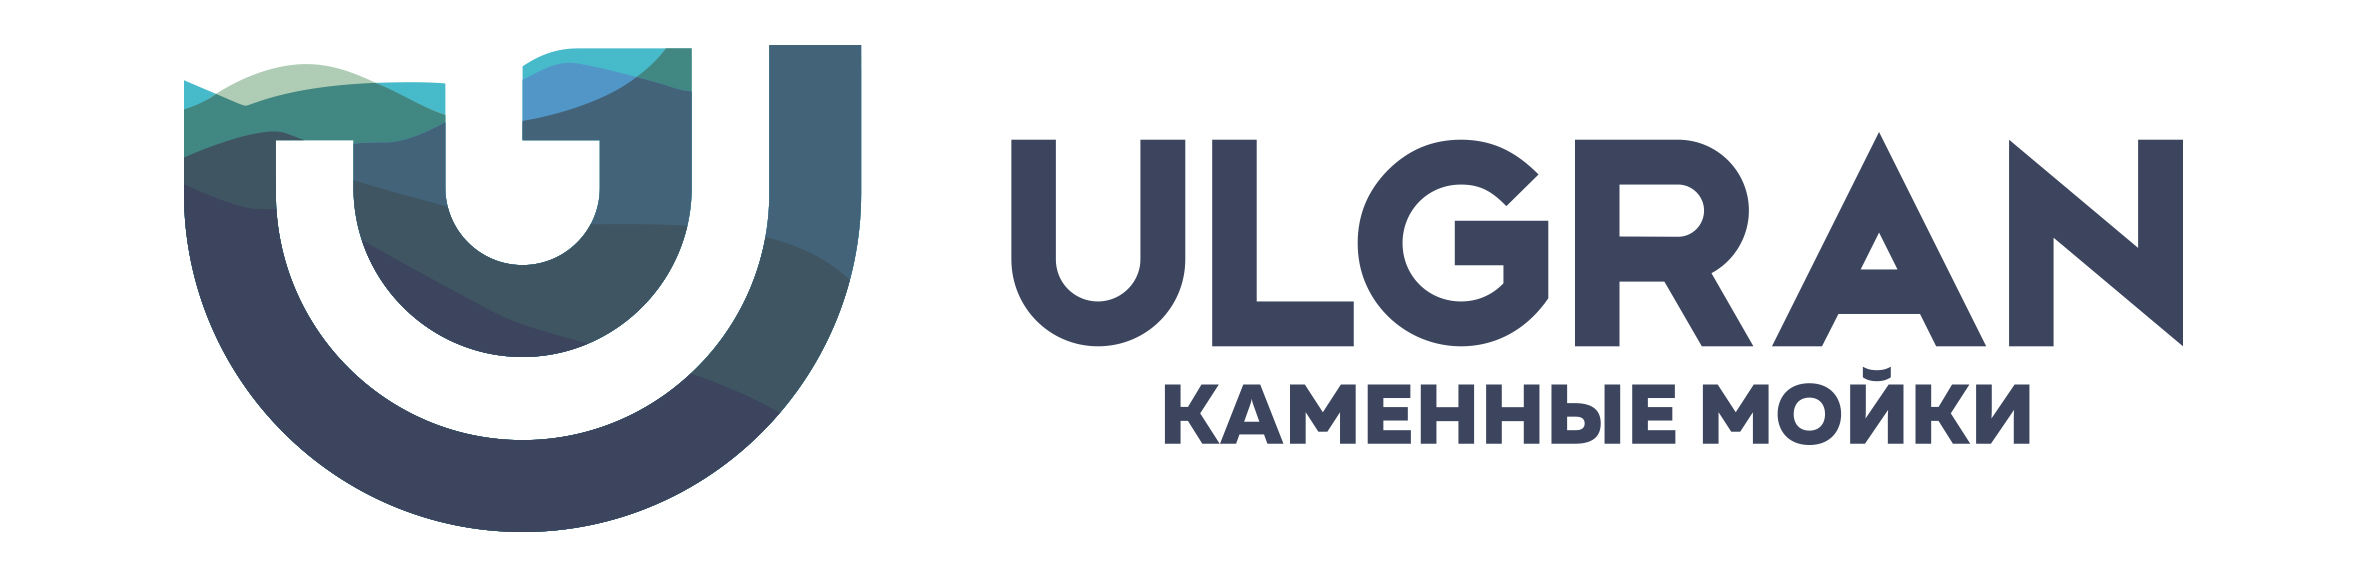 логотип ULGRAN